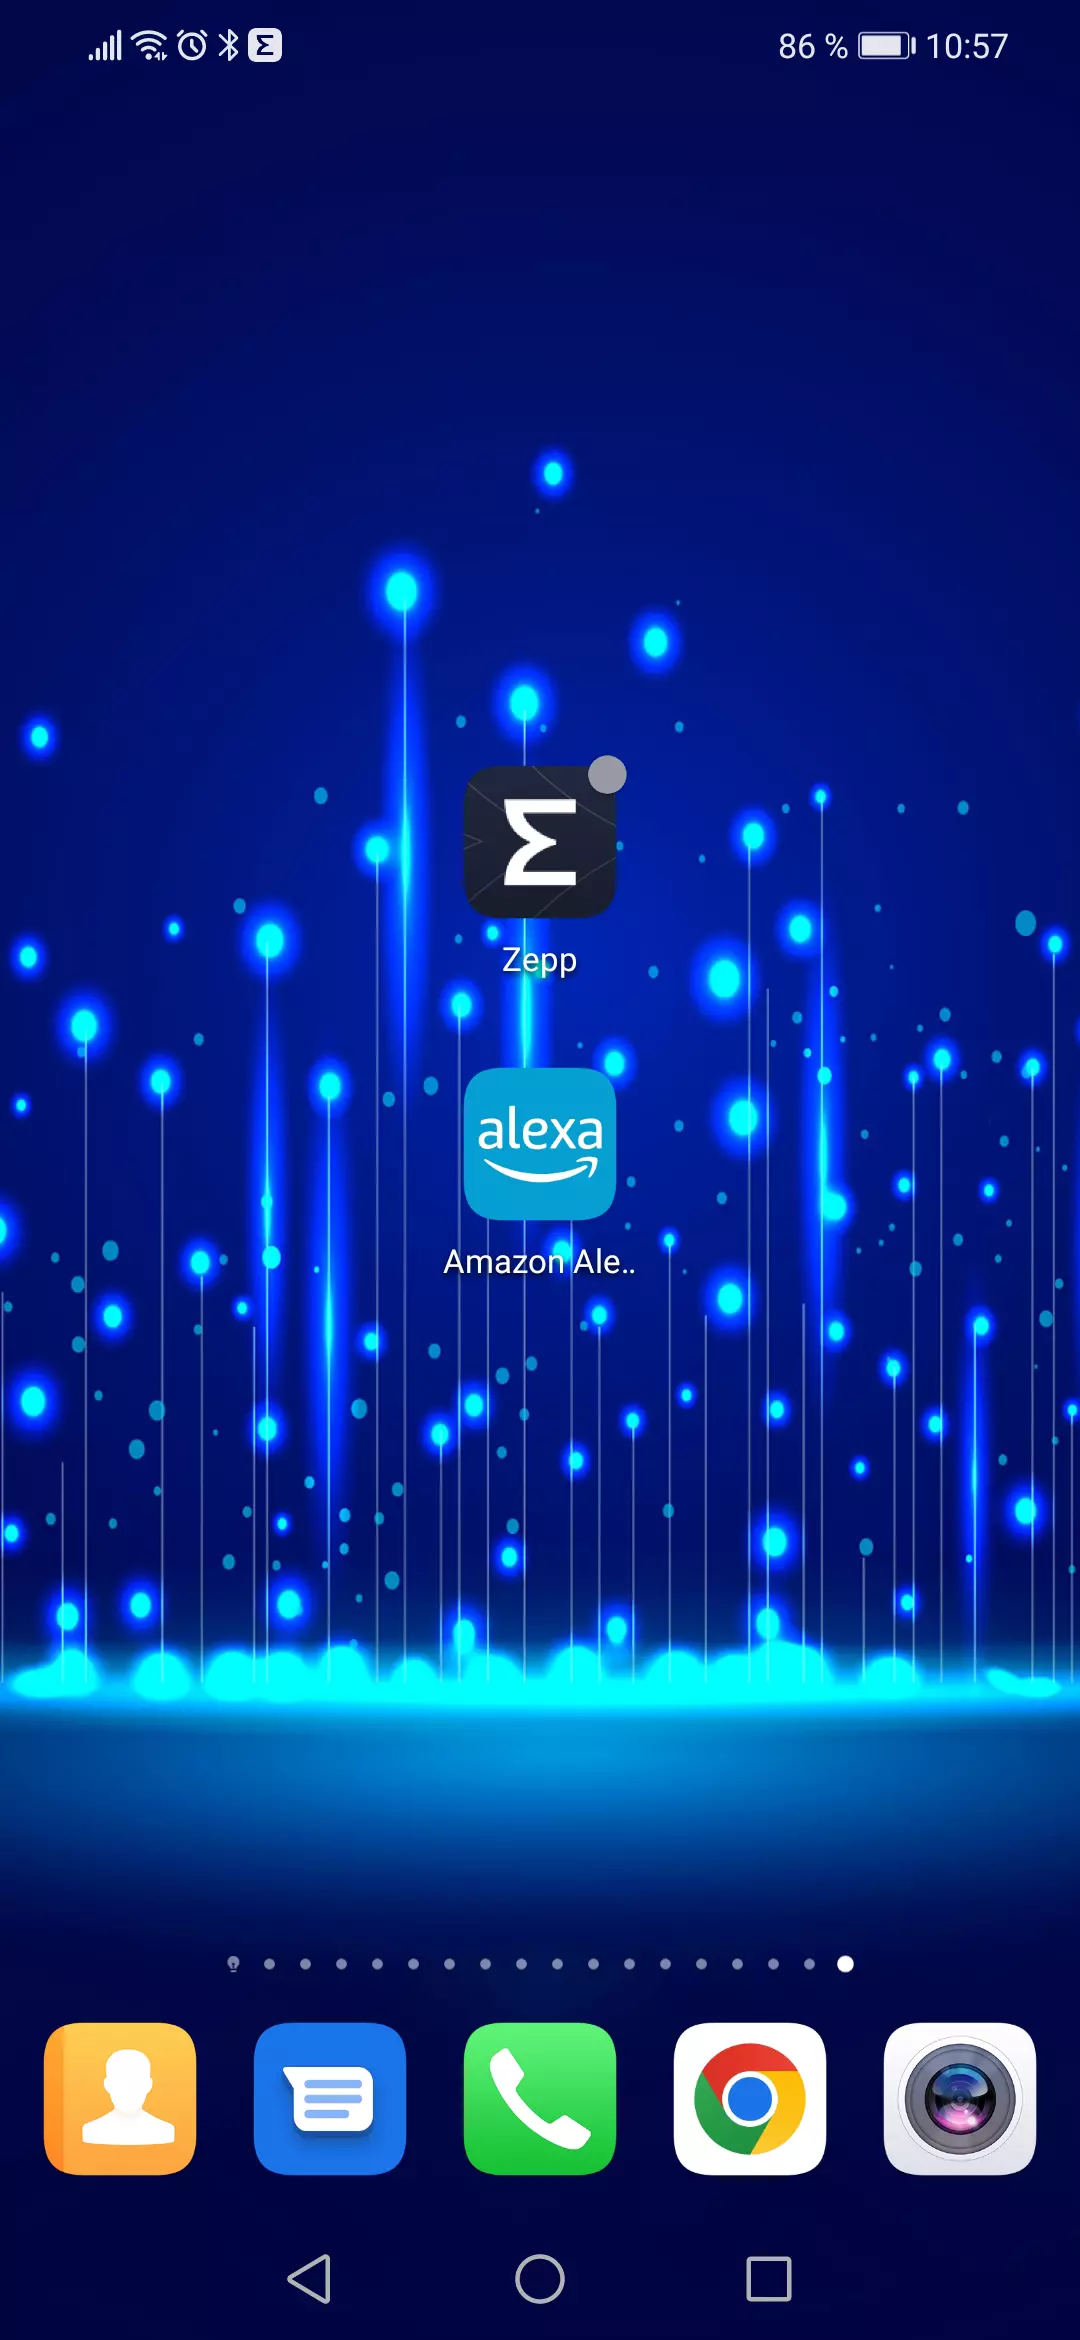 Acceder a la app Zepp del smartphone